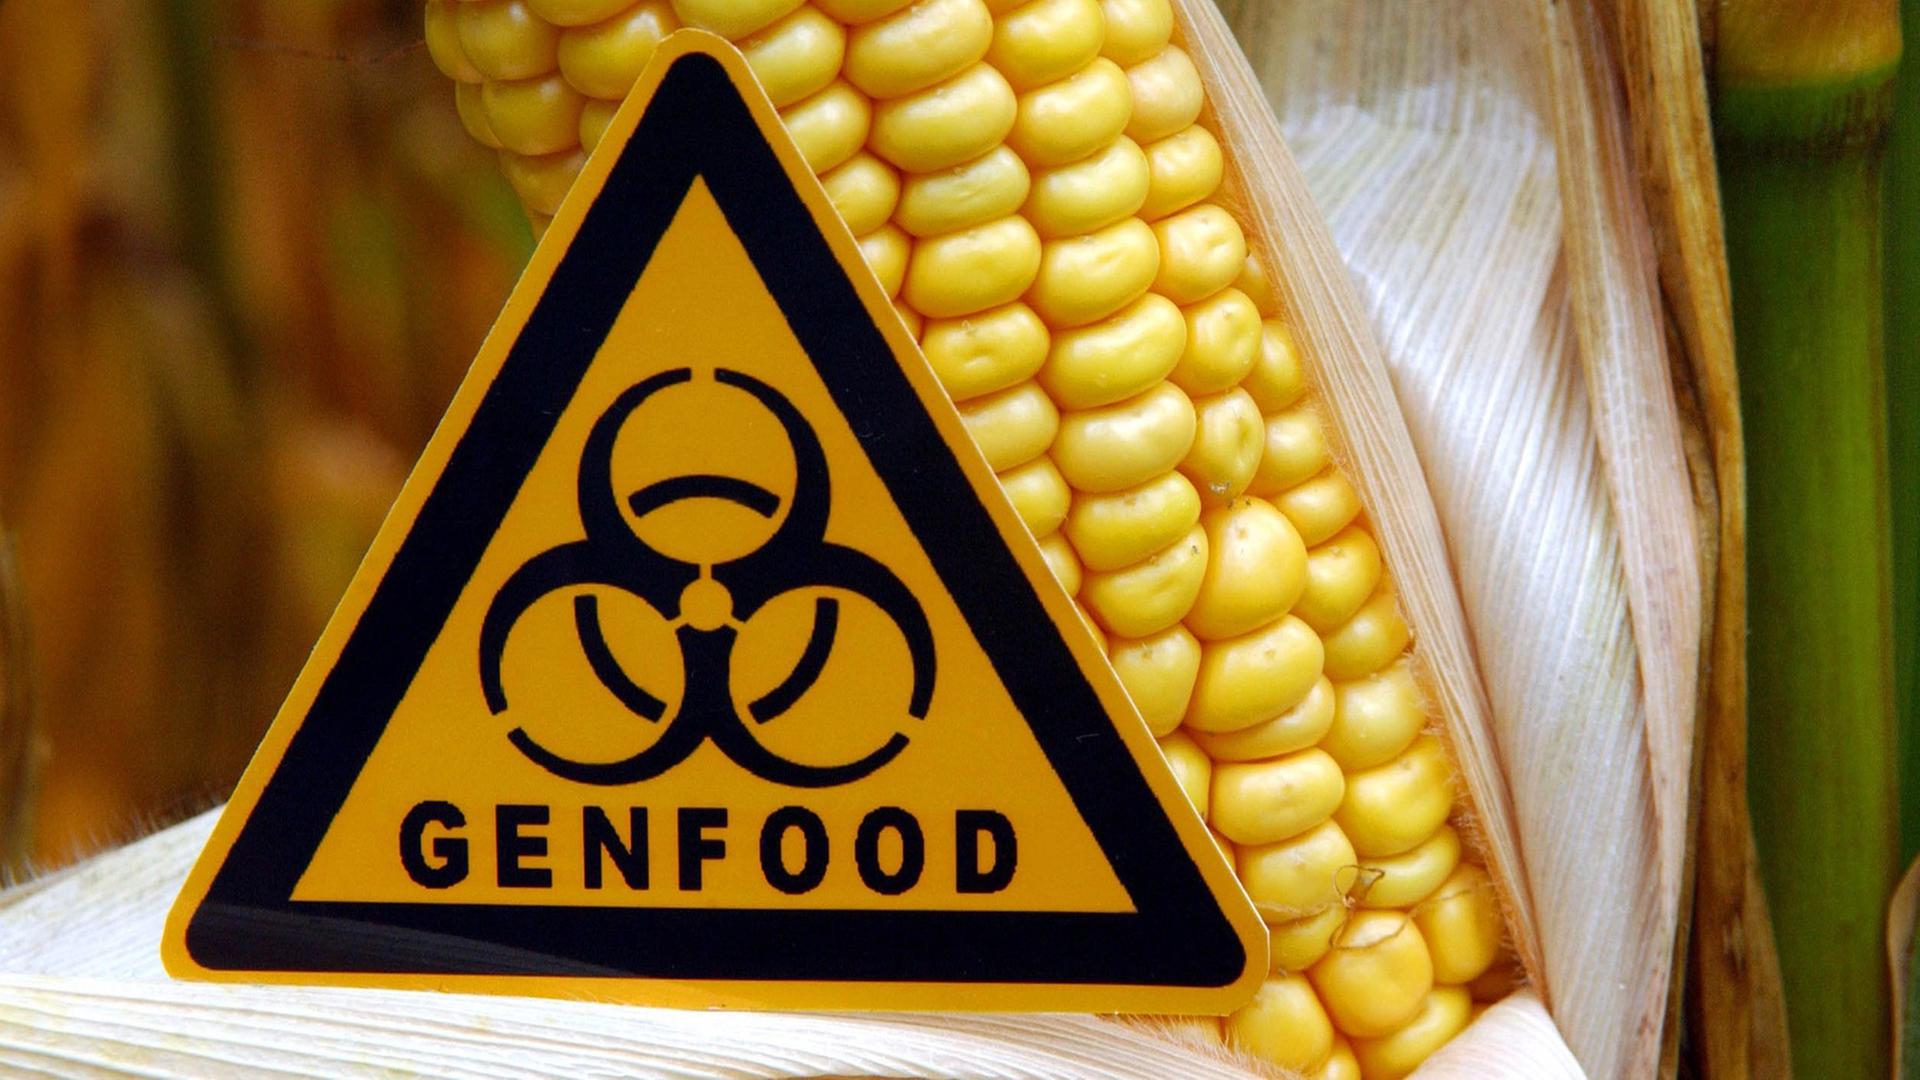 Symbolisch steht ein Schild mit der Aufschrift "Genfood" vor einem gentechnisch veränderten Maiskolben auf einem Feld nahe Ramin im Landkreis Uecker-Randow.